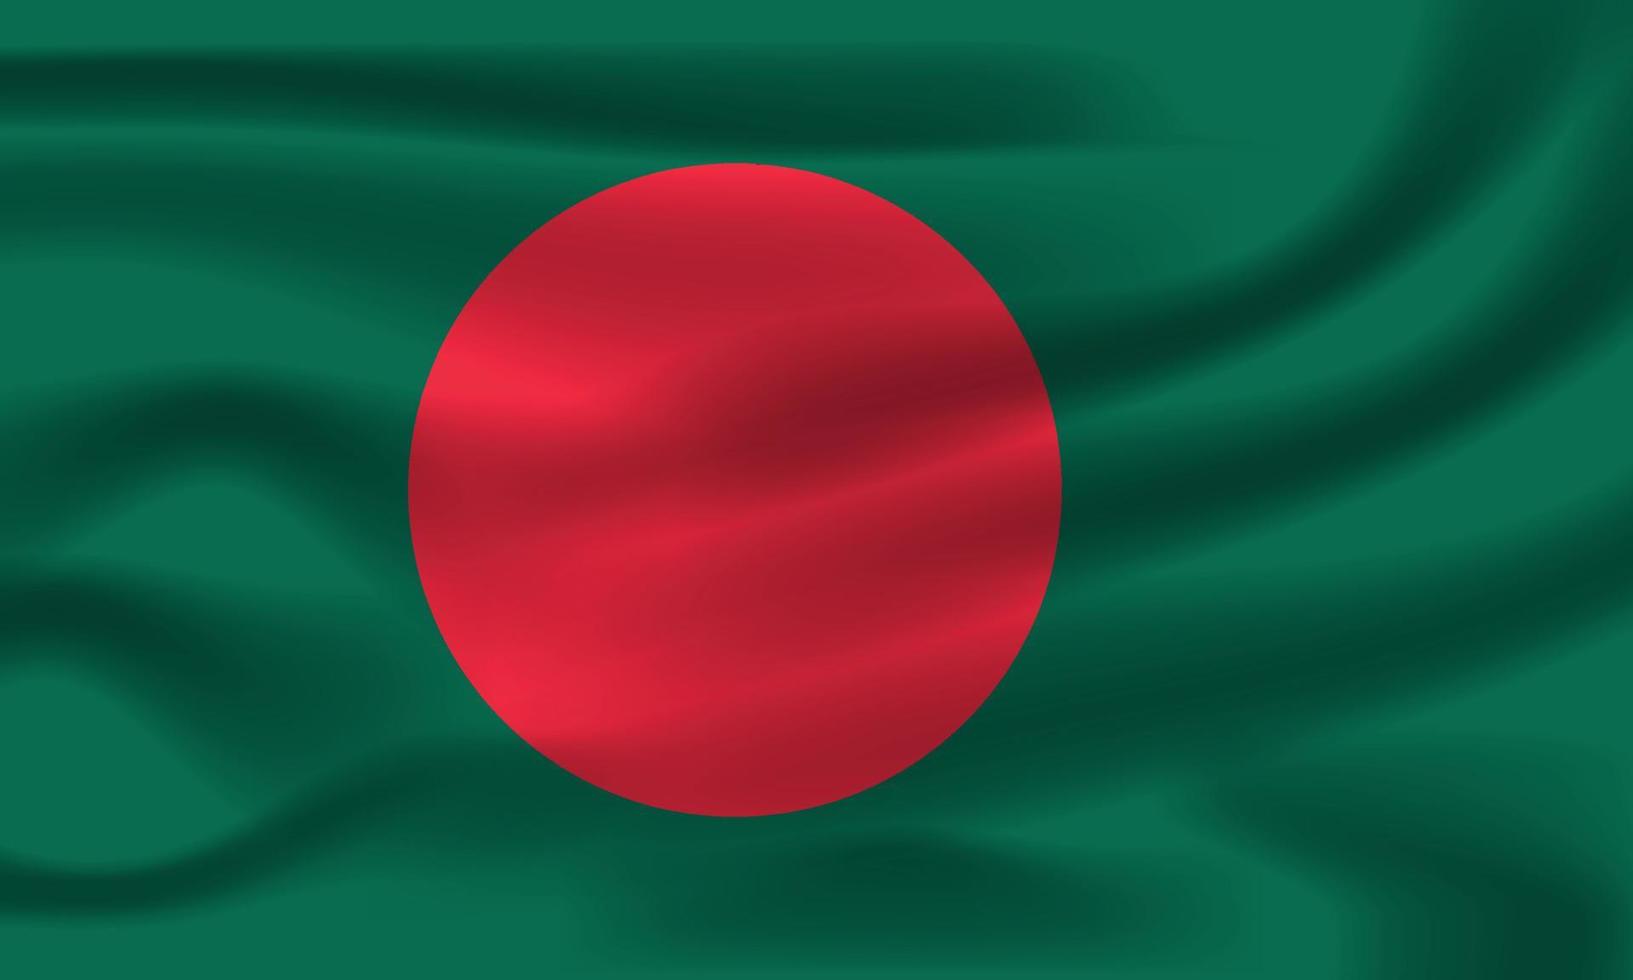 die realistische nationalflagge von bangladesch vektor